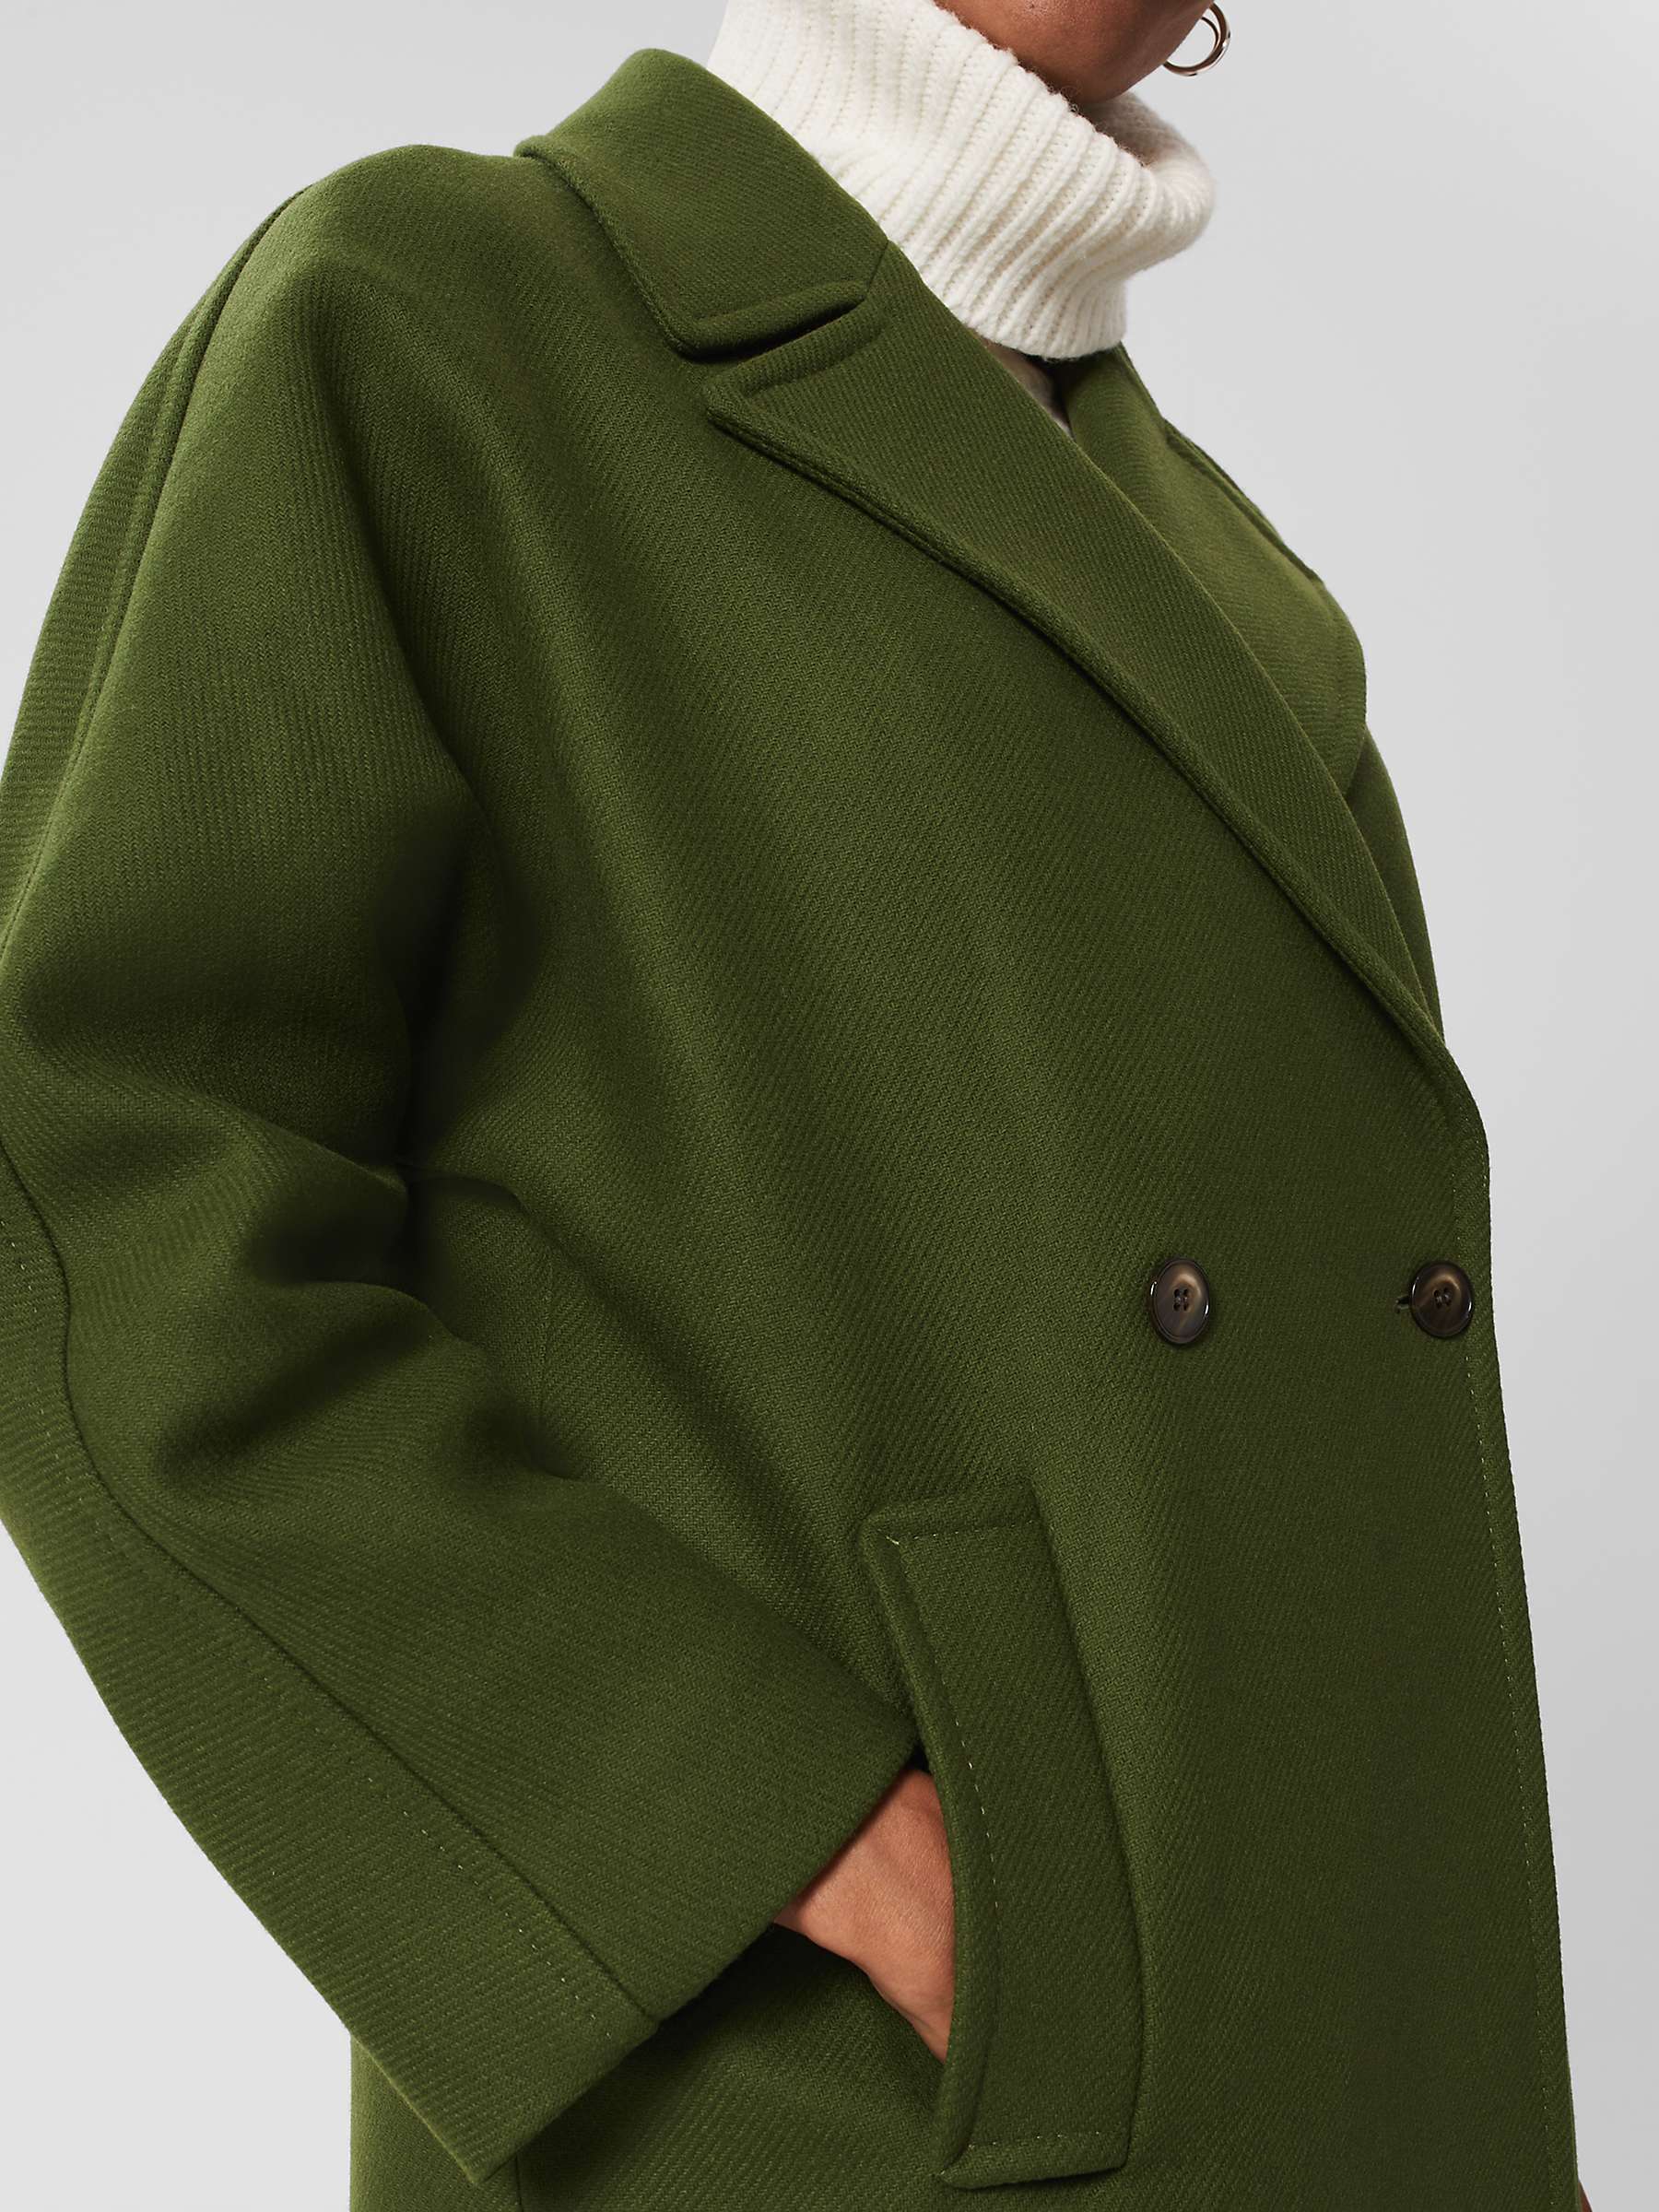 Buy Hobbs Carine Wool Blend Coat, Green Online at johnlewis.com